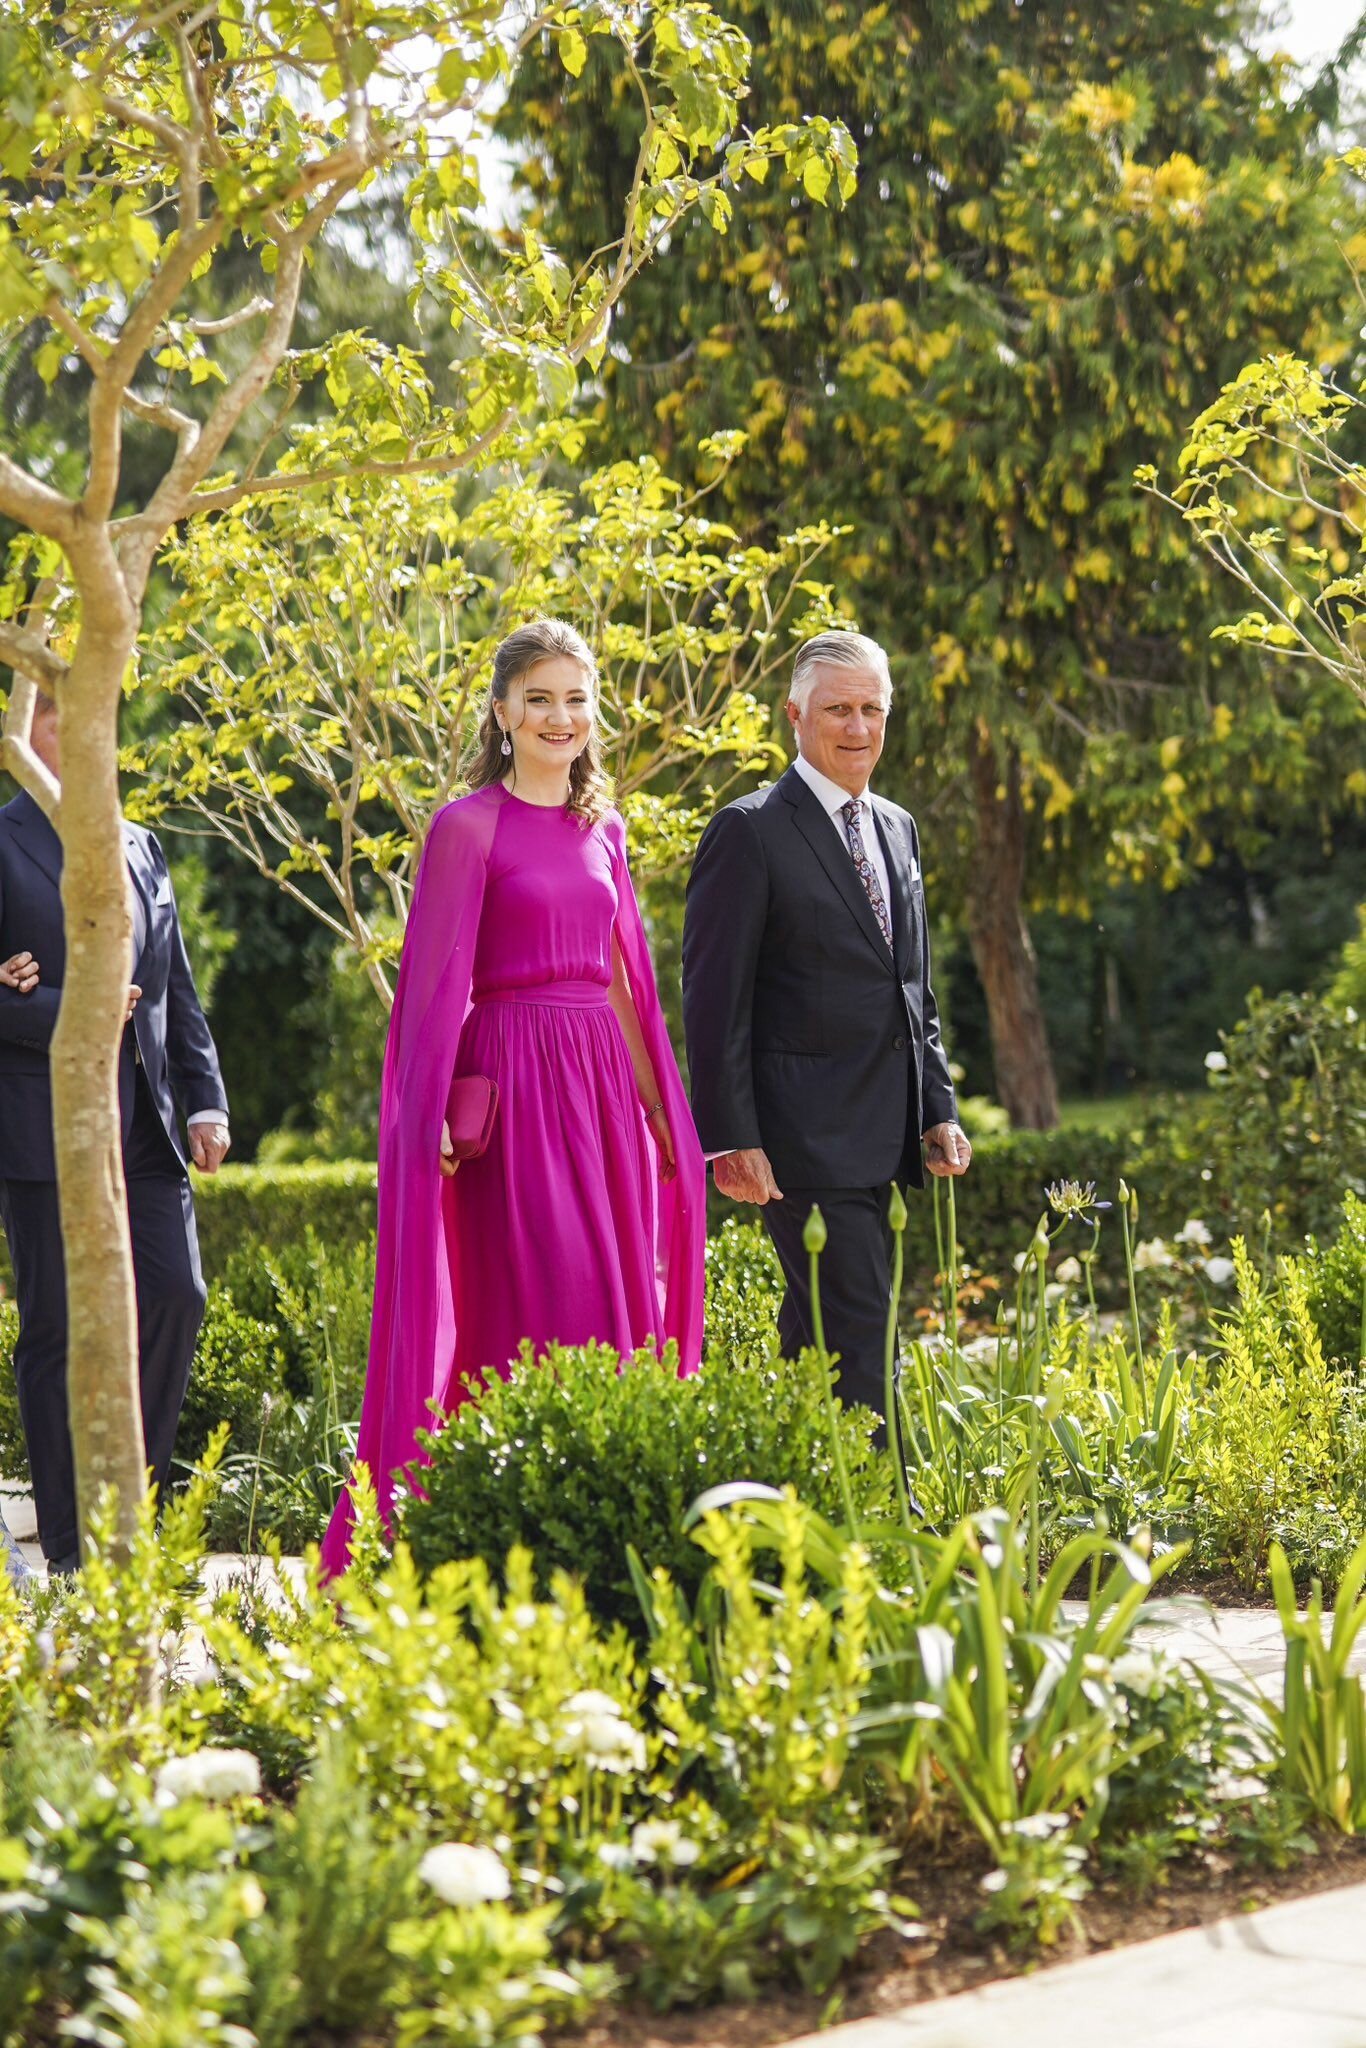 Монархи со всего мира съехались на свадьбу принца Иордании, Кейт Миддлтон затмила всех. Топ фото гостей свадьбы, где отметились даже принцессы Японии